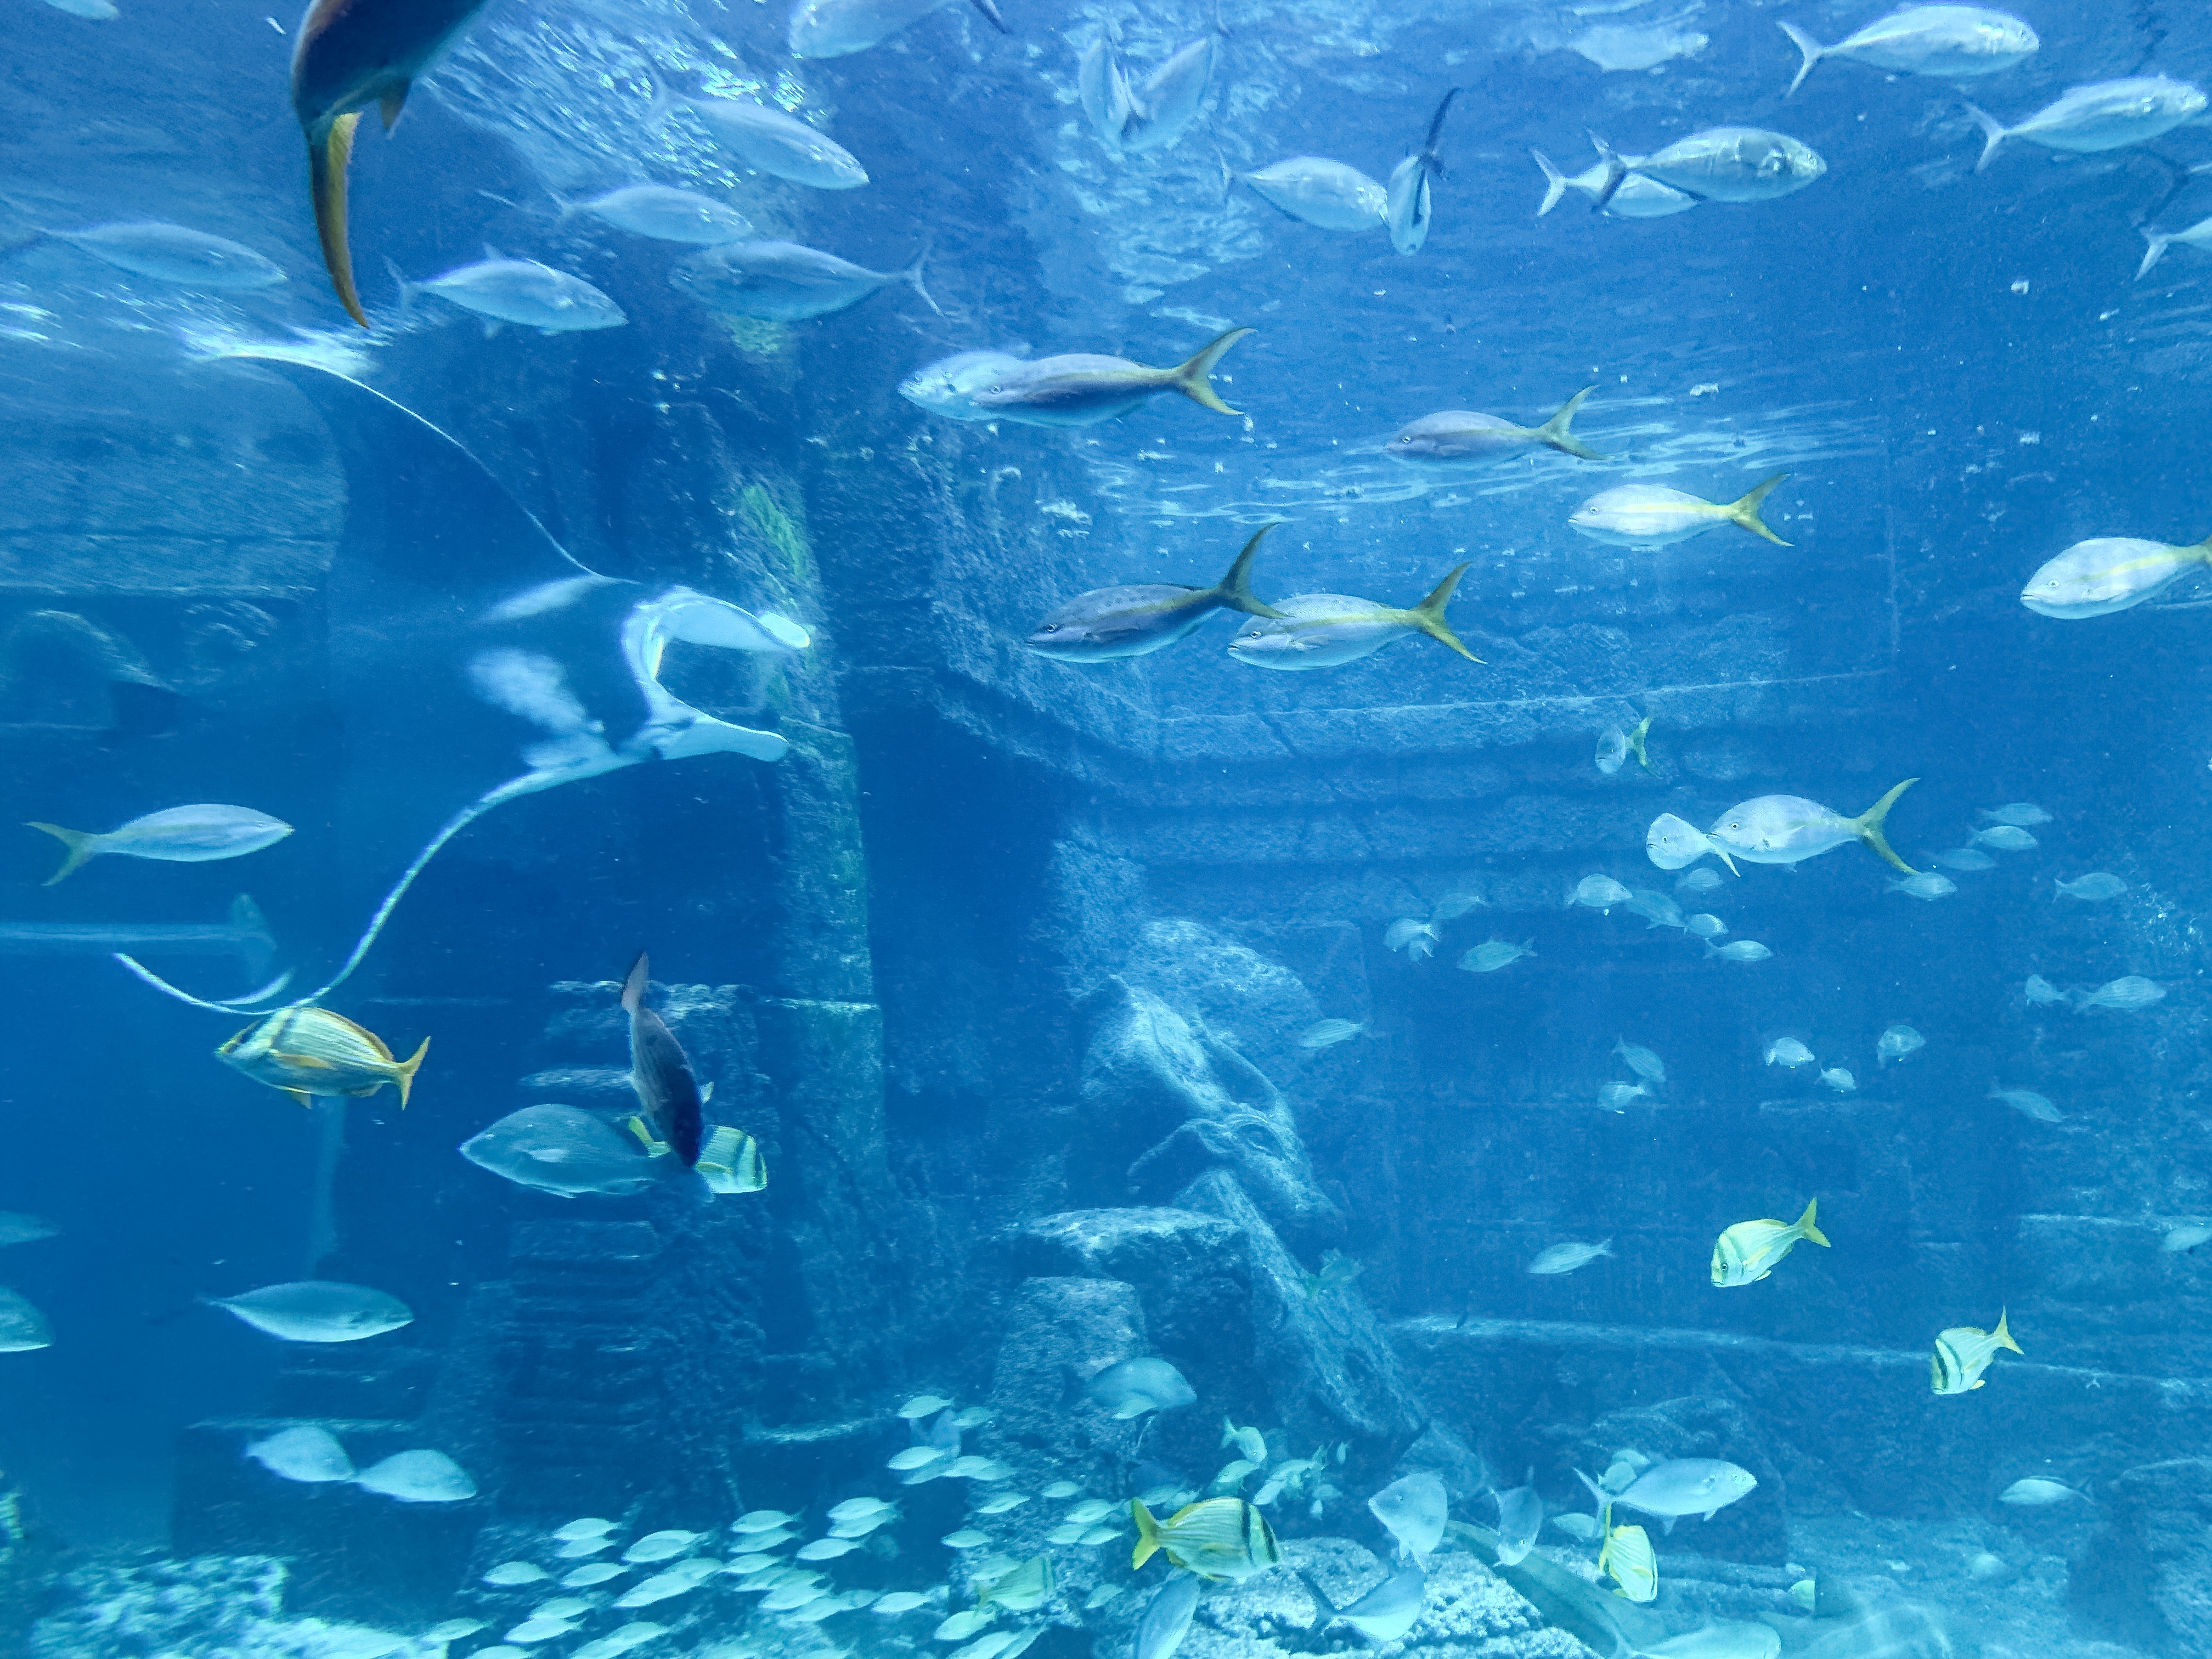 atlantis aquarium